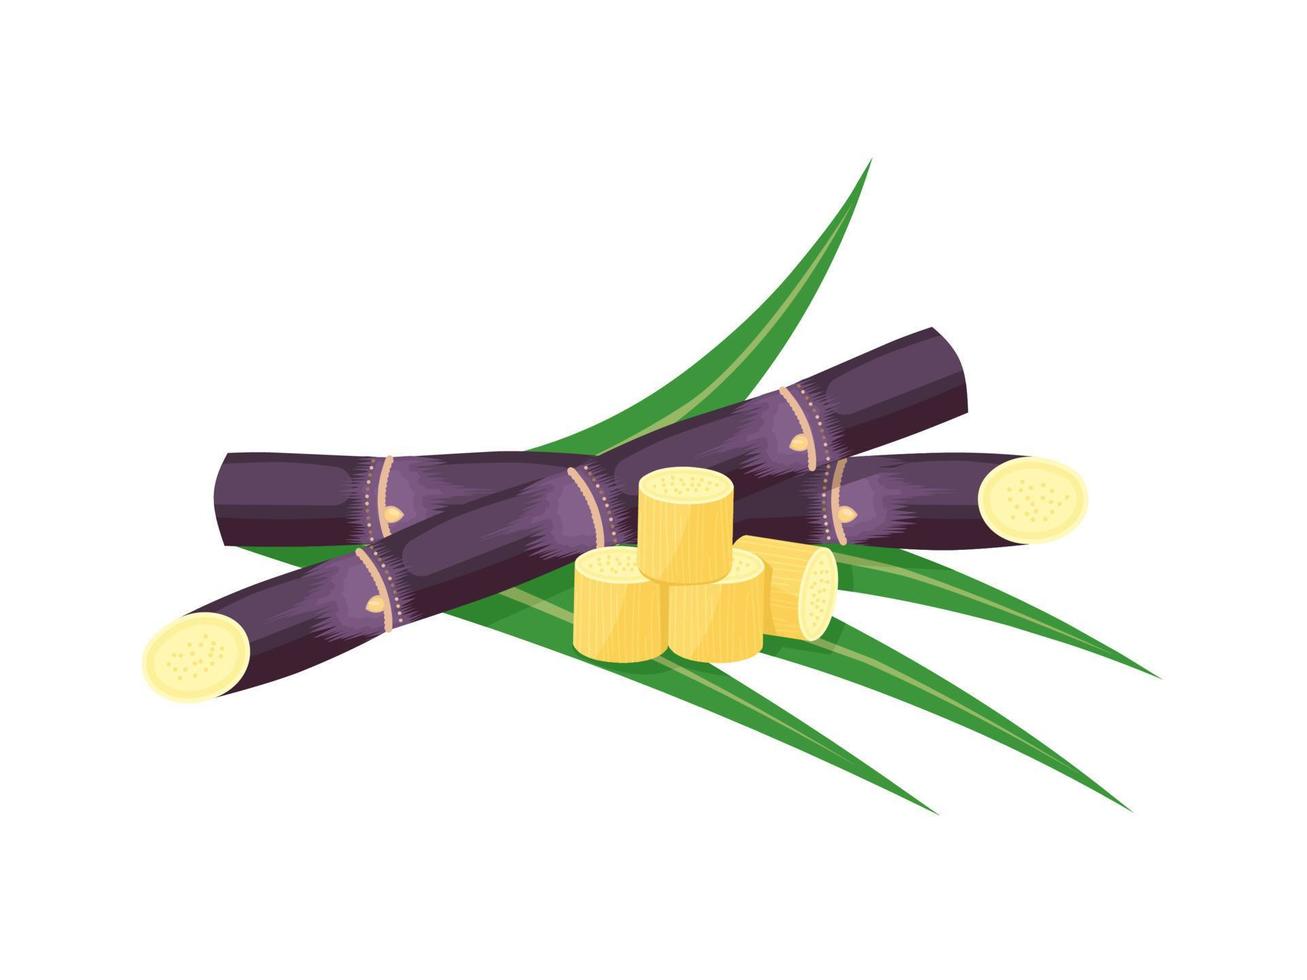 illustration vectorielle de canne à sucre, isolée sur fond blanc, adaptée comme étiquette d'emballage pour les produits transformés à base de canne à sucre. vecteur